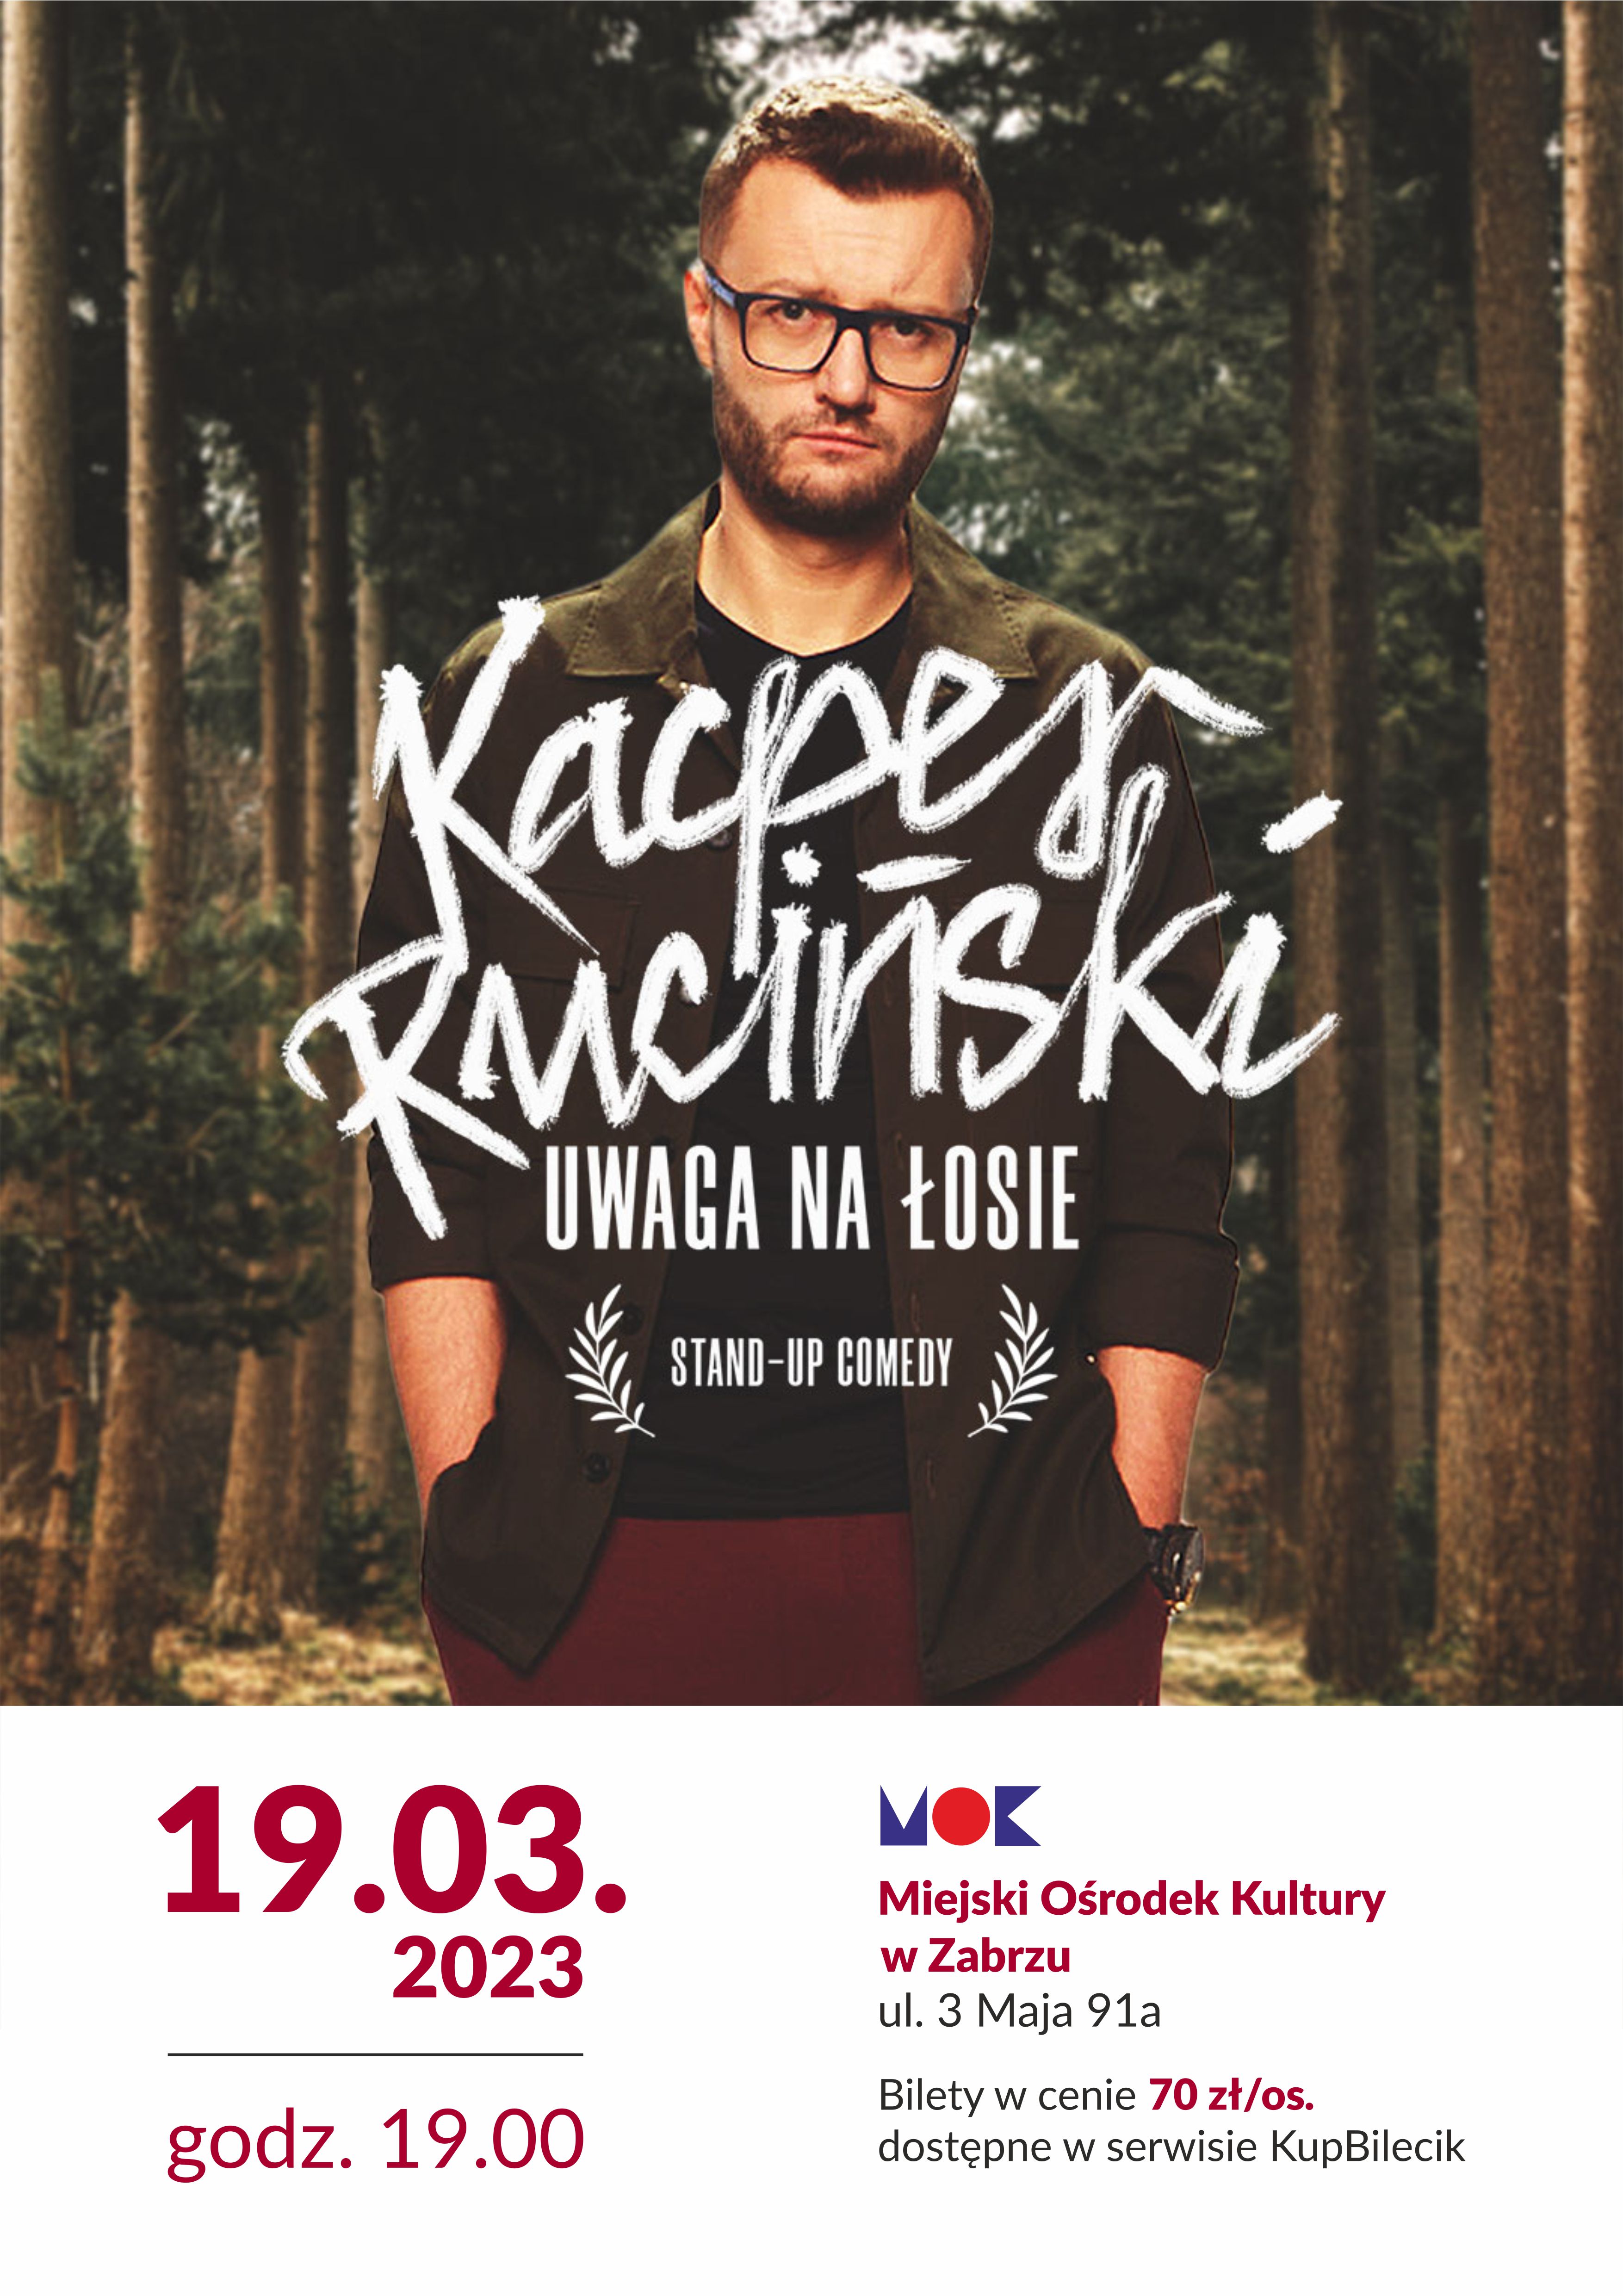 plakat z wizerunkiem Kacpra Rucińskiego stojącego na tle lasu